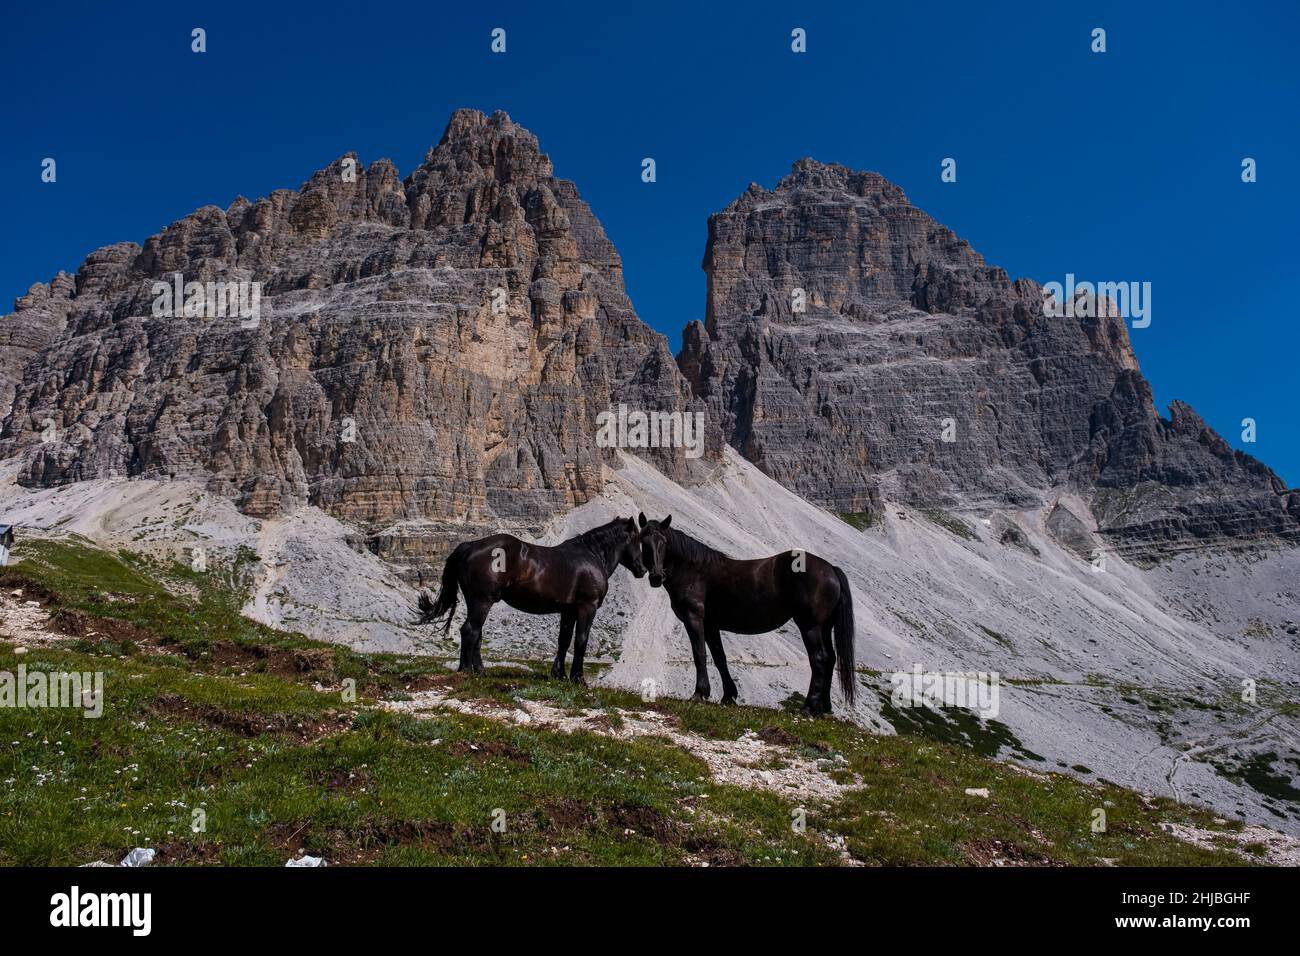 Deux chevaux noirs sont debout sur une colline rocheuse, les faces sud du groupe de montagne Tre cime di Lavaredo au loin. Banque D'Images